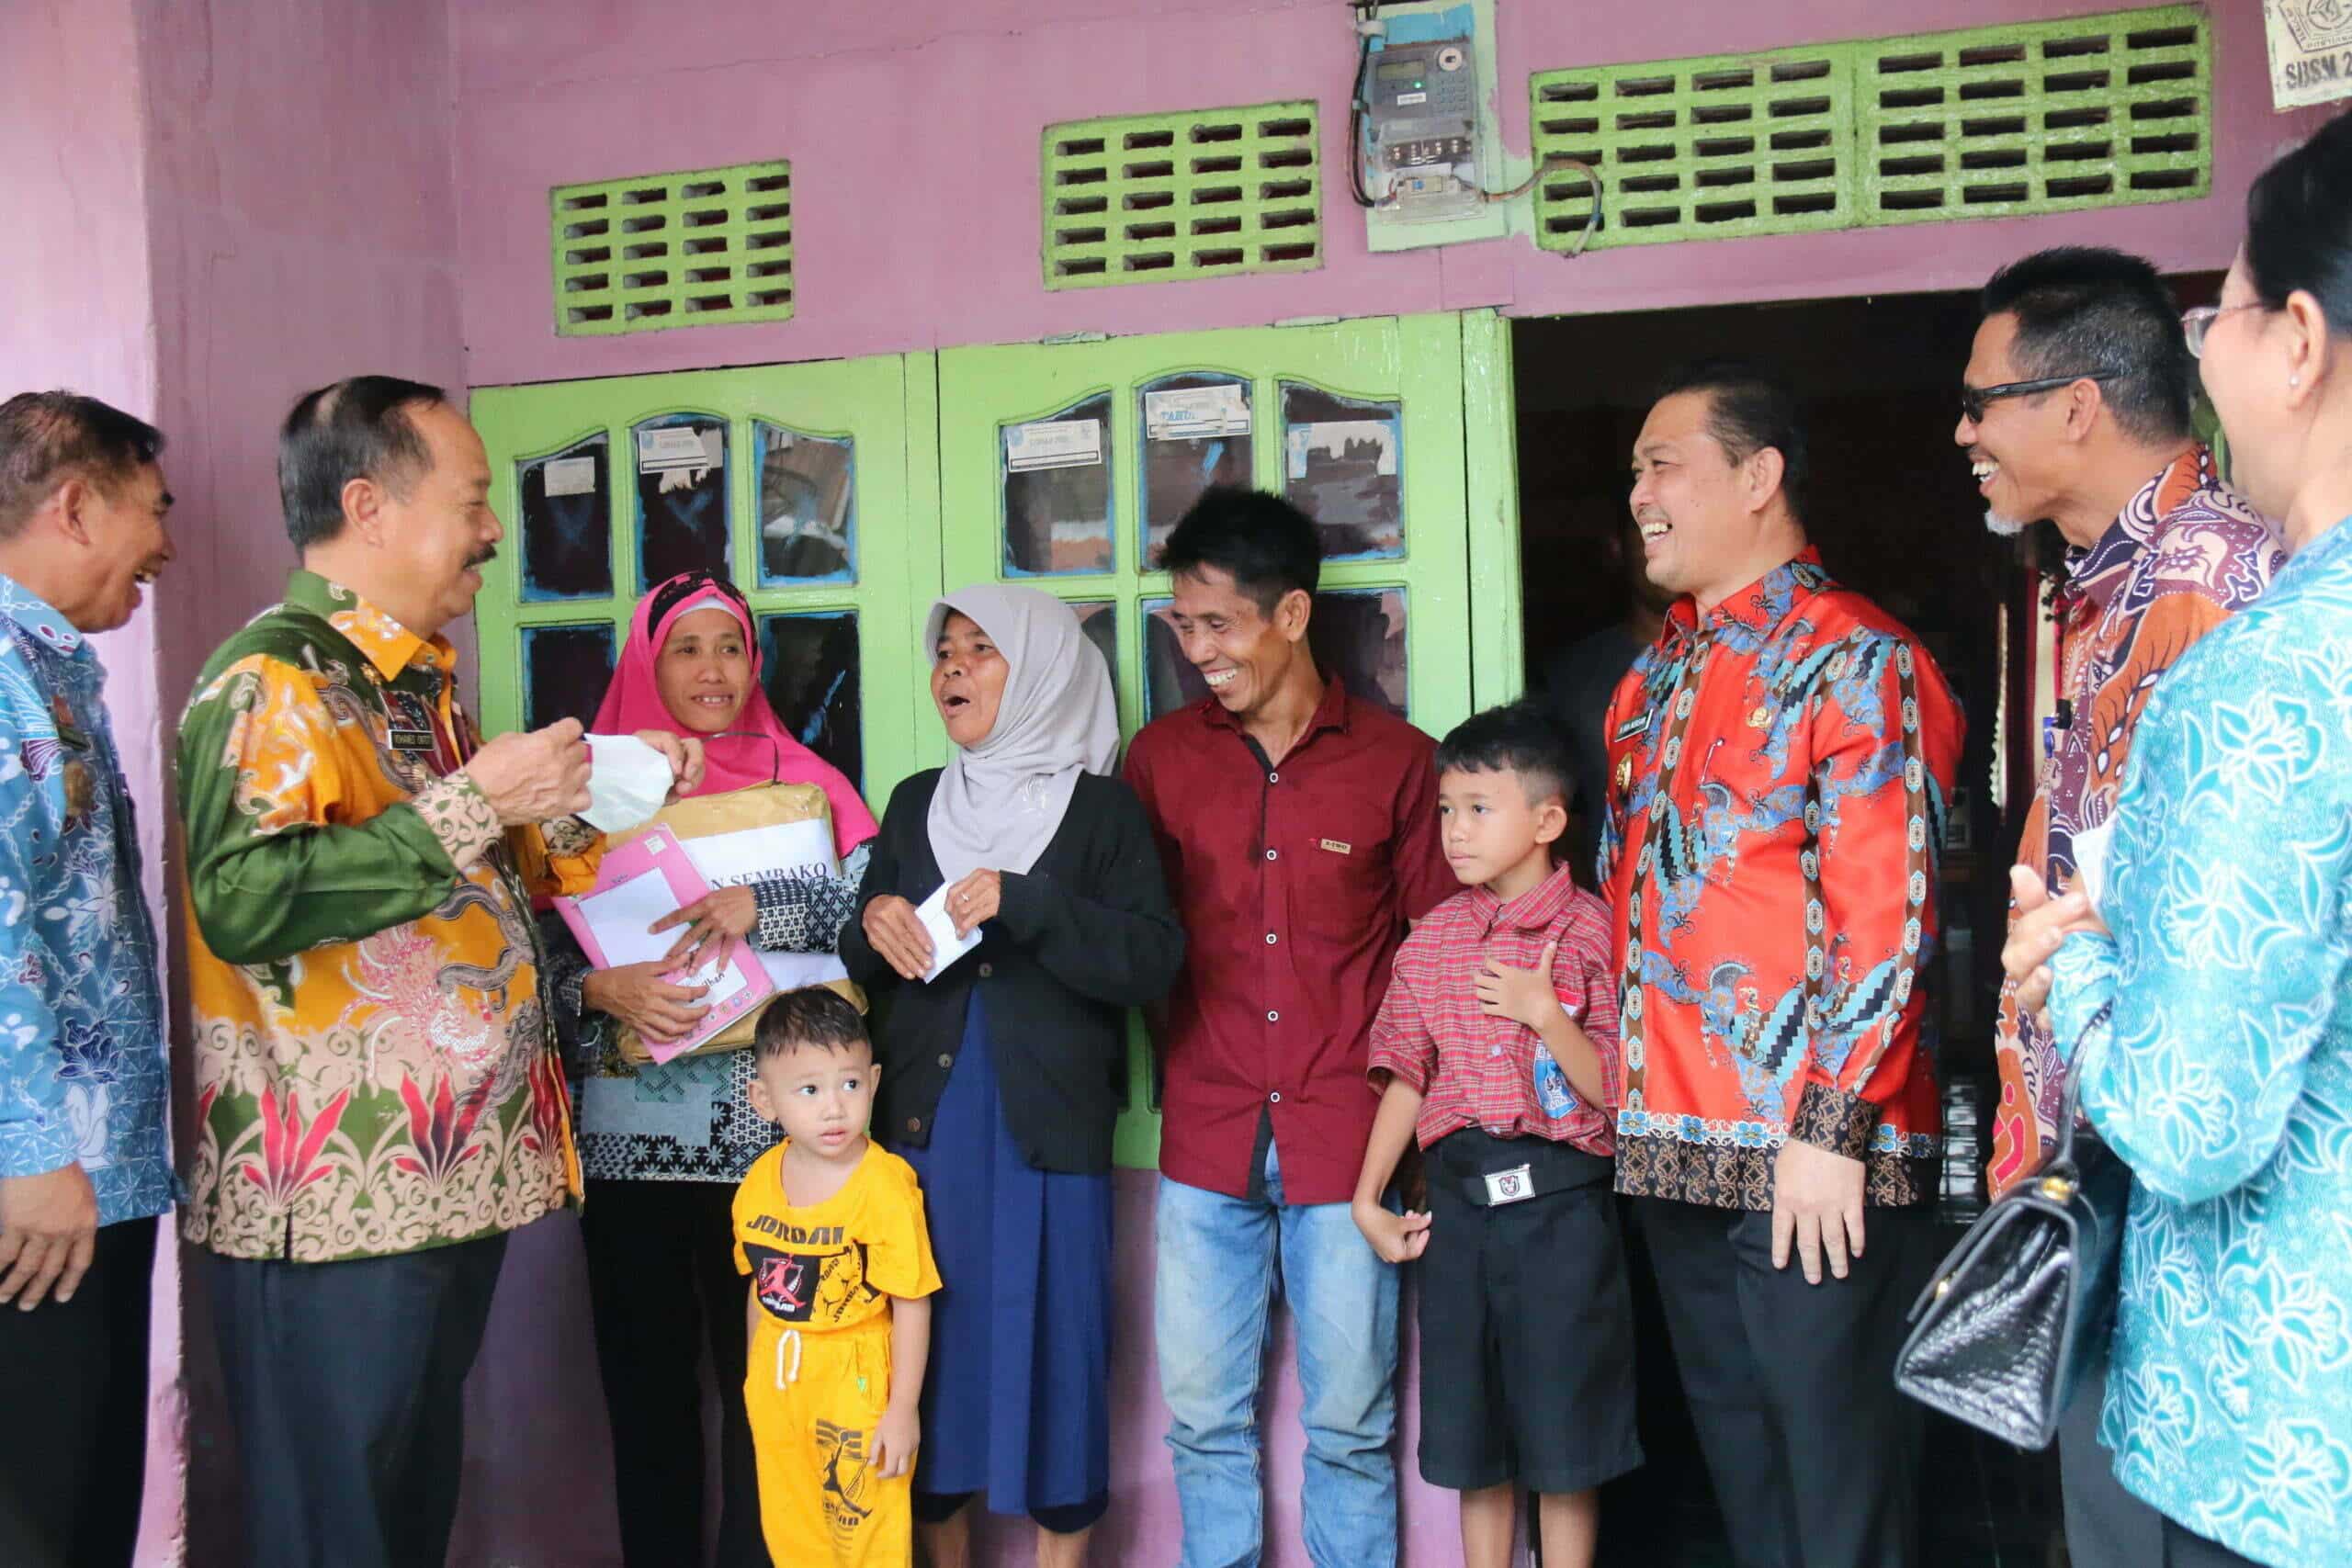 Wakil Gubernur Kalimantan Barat, Ria Norsan bersama Wakil Bupati Sanggau, Yohanes Ontot mengunjungi keluarga yang berisiko stunting di Desa Penyeladi, Kecamatan Kapuas, Kabupaten Sanggau, Kamis (15/09/2022).